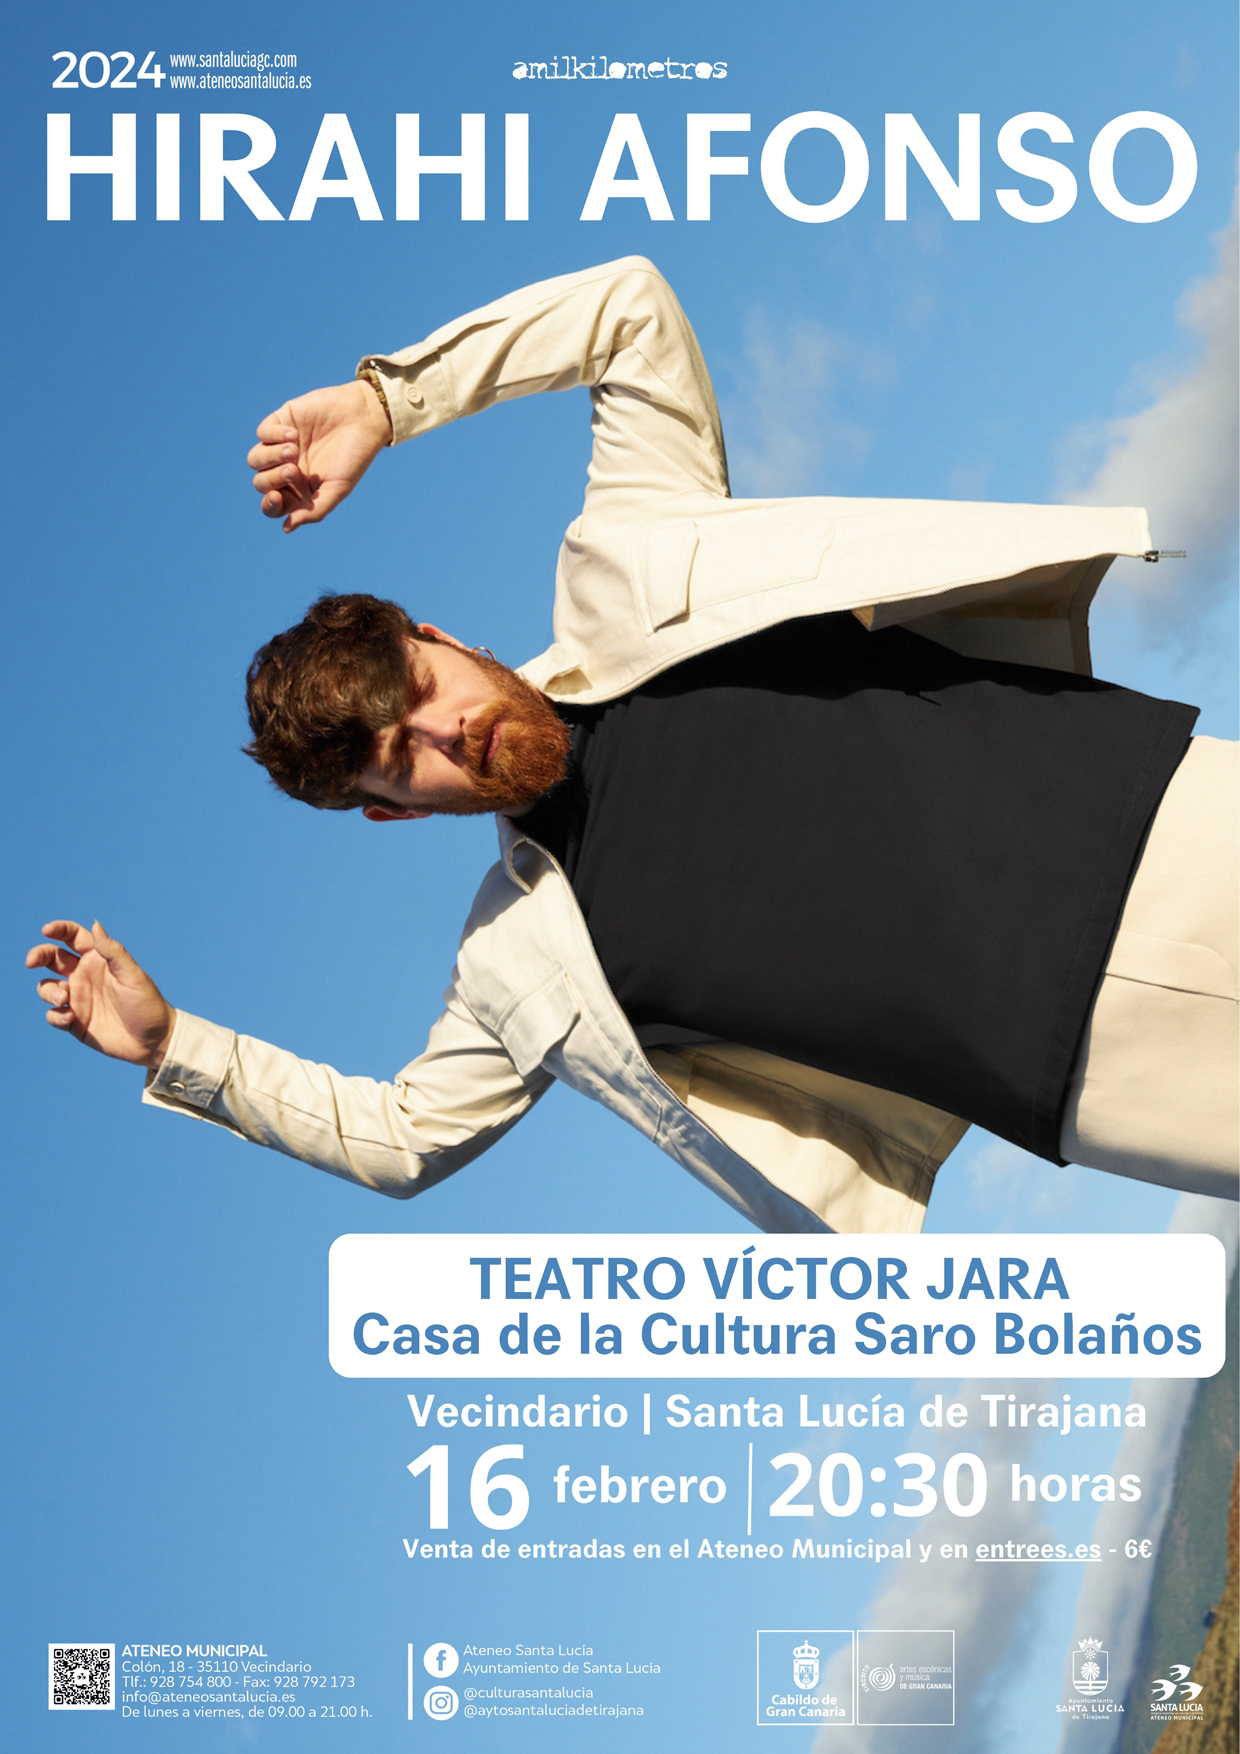 El timplista Hirahi Afonso presenta su disco ‘Lo puro’ este viernes en el teatro Víctor Jara 